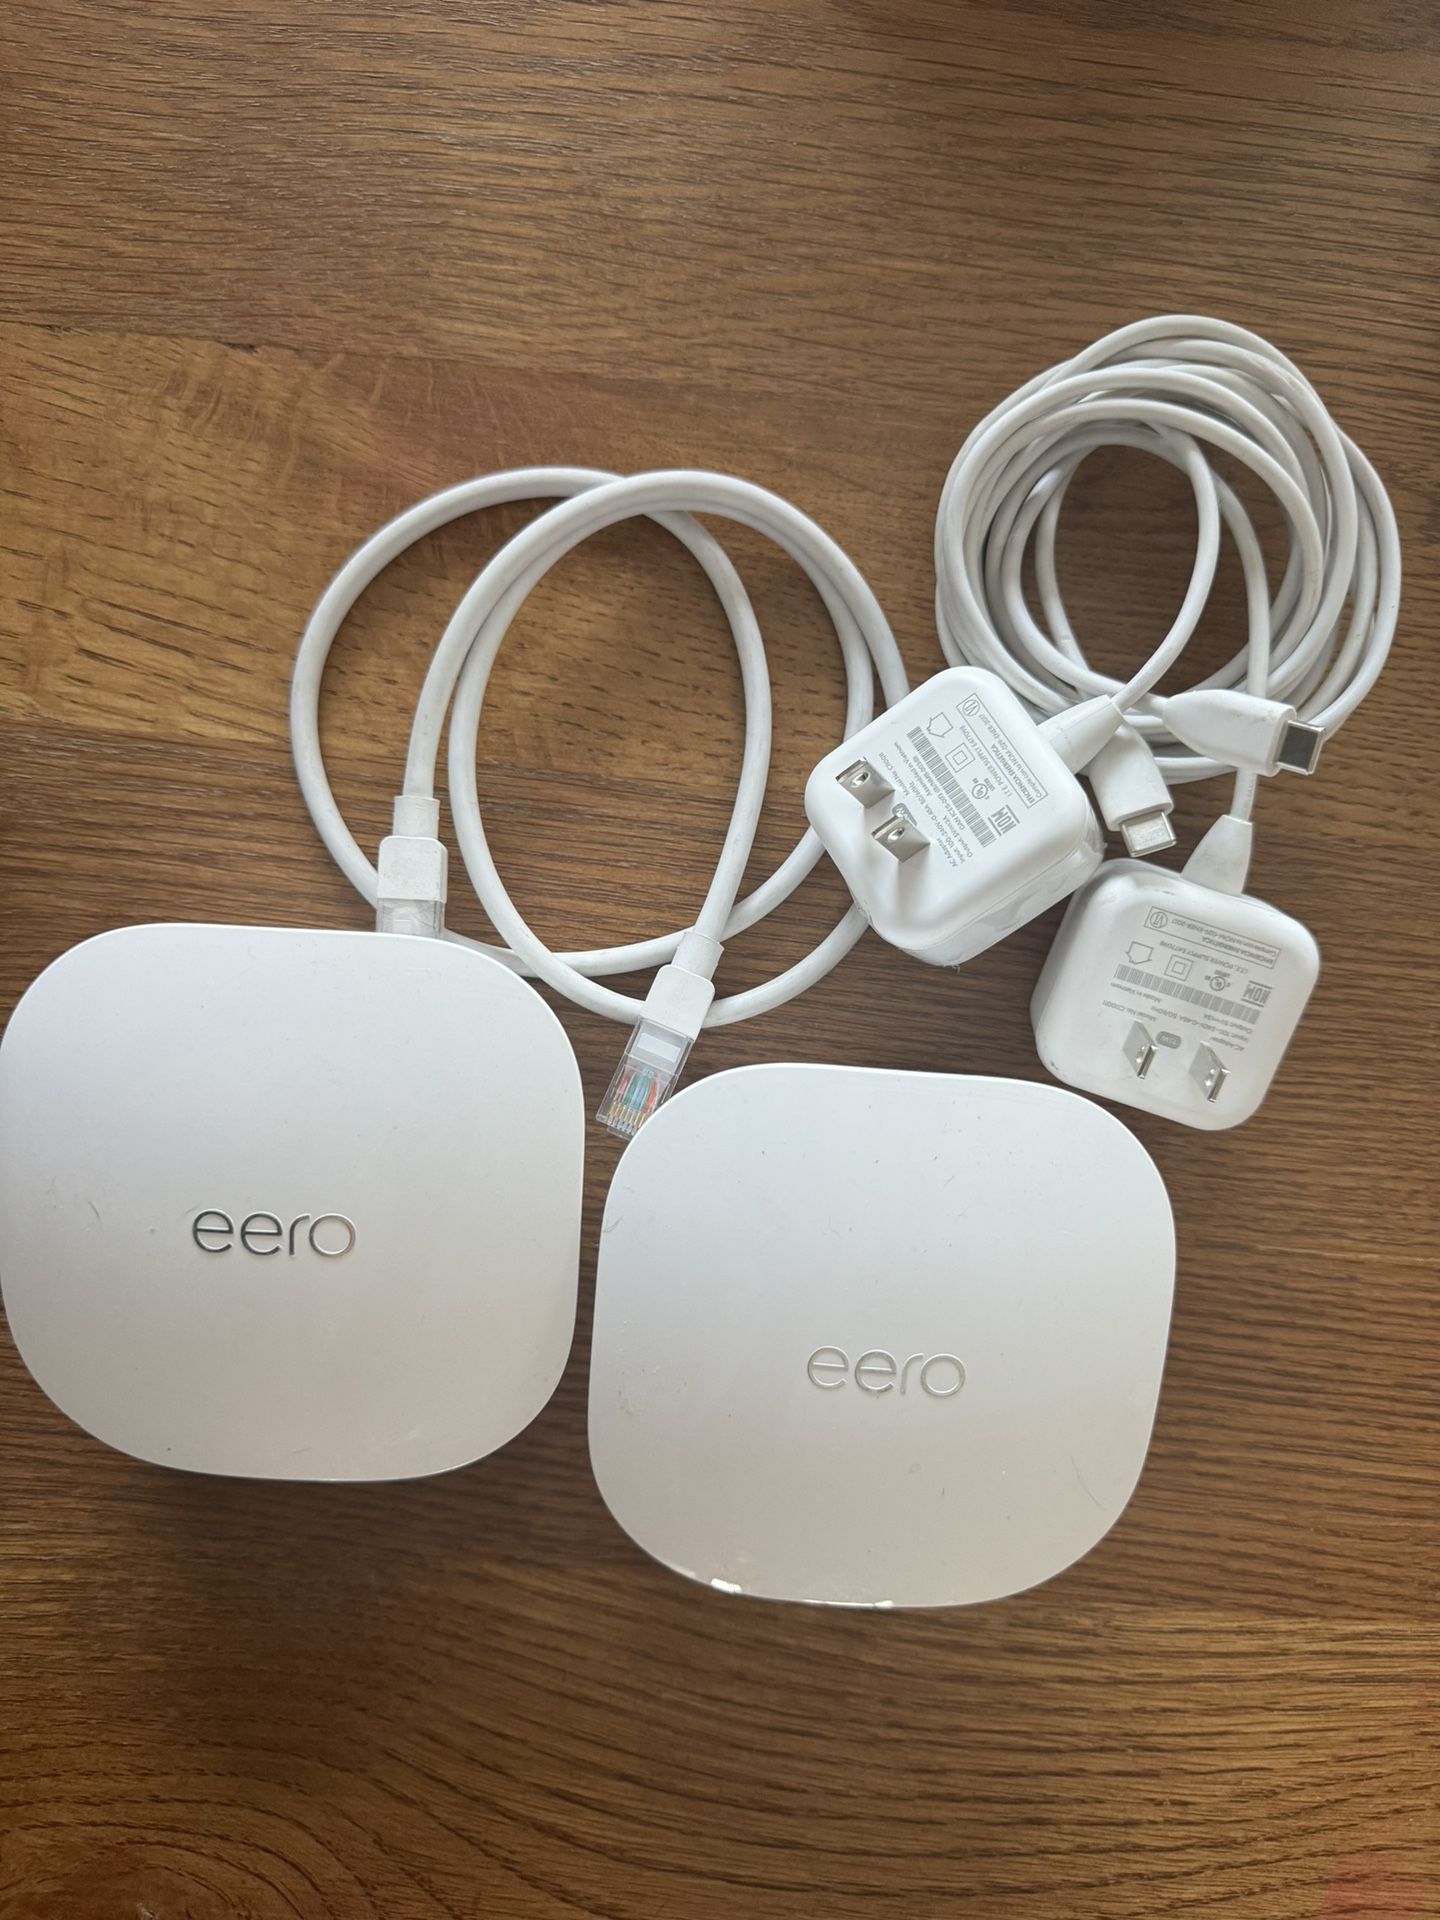 Set Of 3 Amazon eero mesh WiFi router